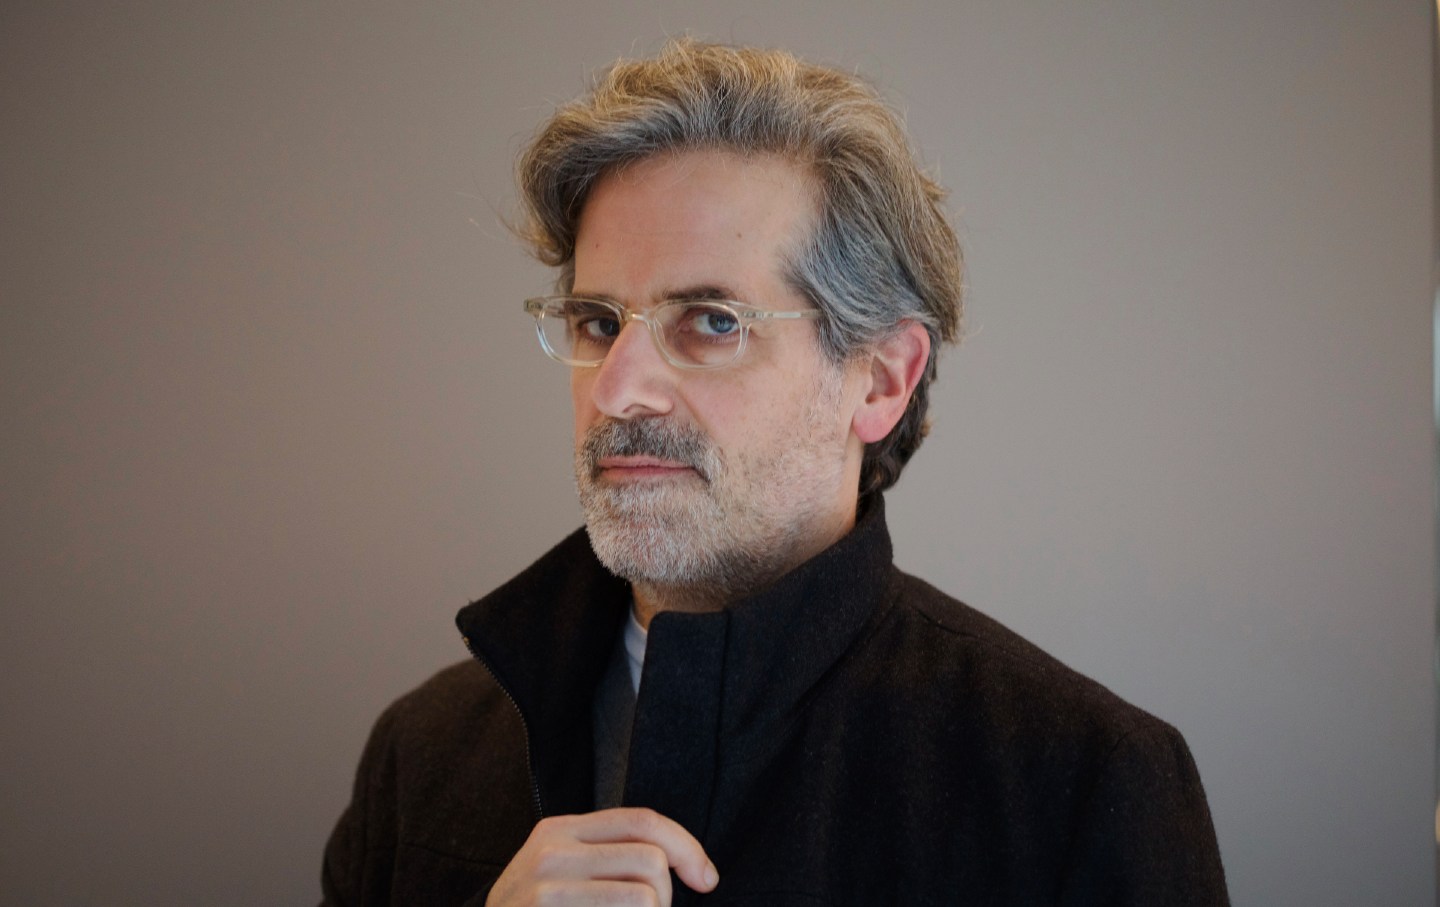 Der Schriftsteller Jonathan Lethem posiert für ein Foto vor grauem Hintergrund